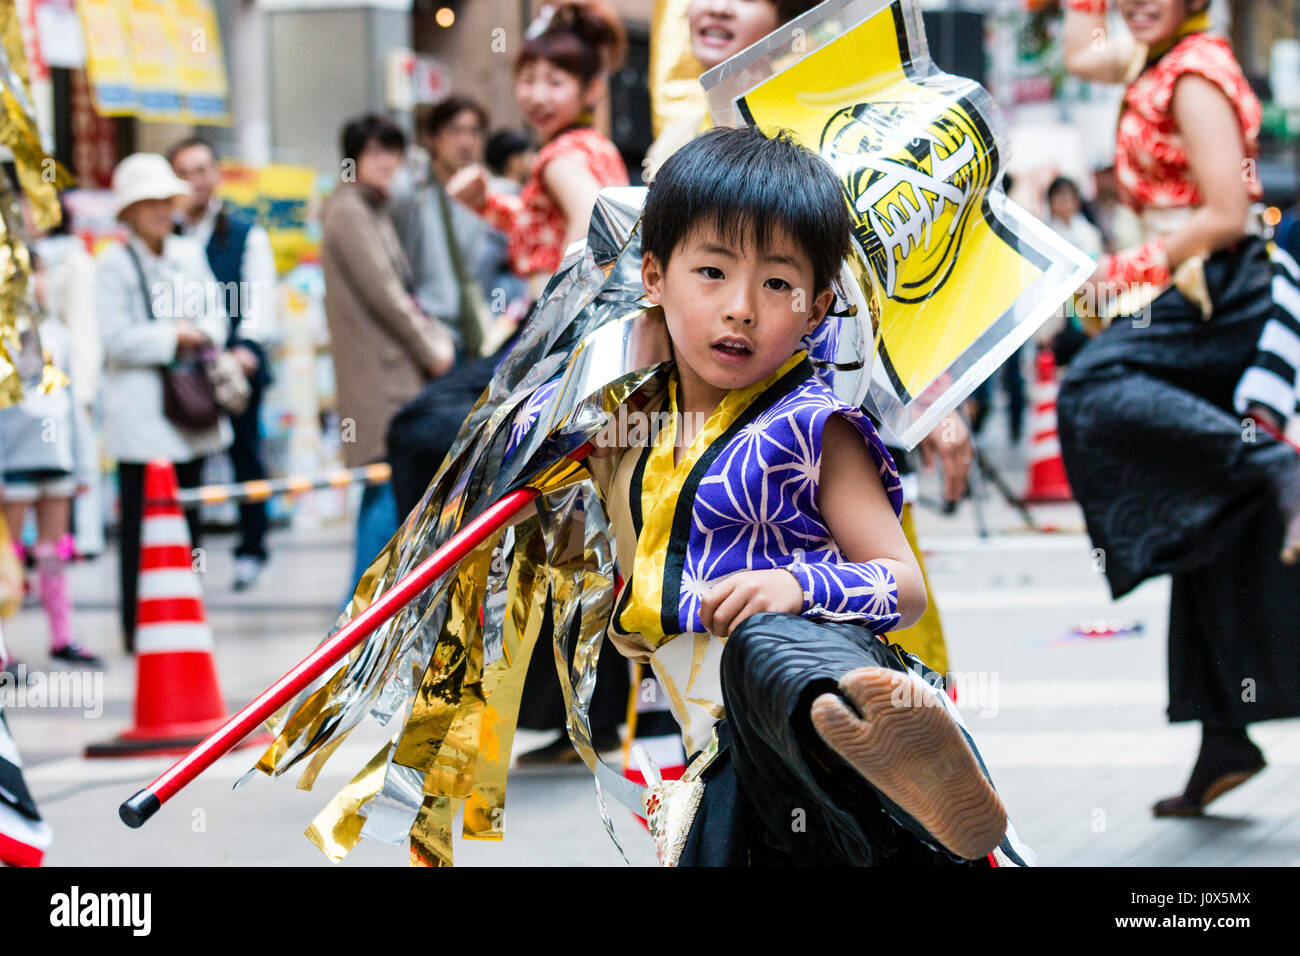 Le Japon, Kumamoto, Hinokuni Danse Yosakoi Festival. Enfant, garçon, 7-8 ans danse et forme autour de standard, les coups de pied vers viewer. close up. Banque D'Images